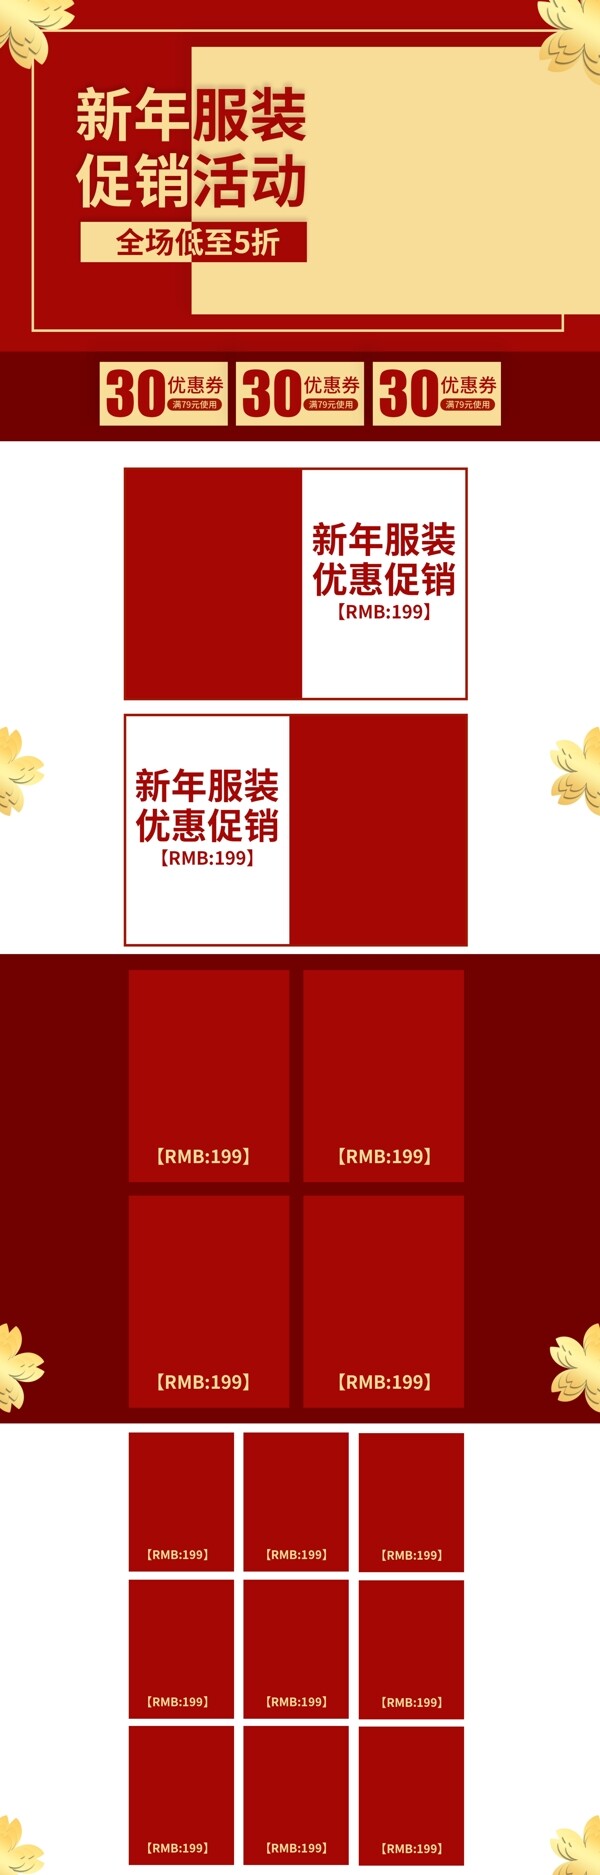 2019红色新年服装优惠促销活动服装首页